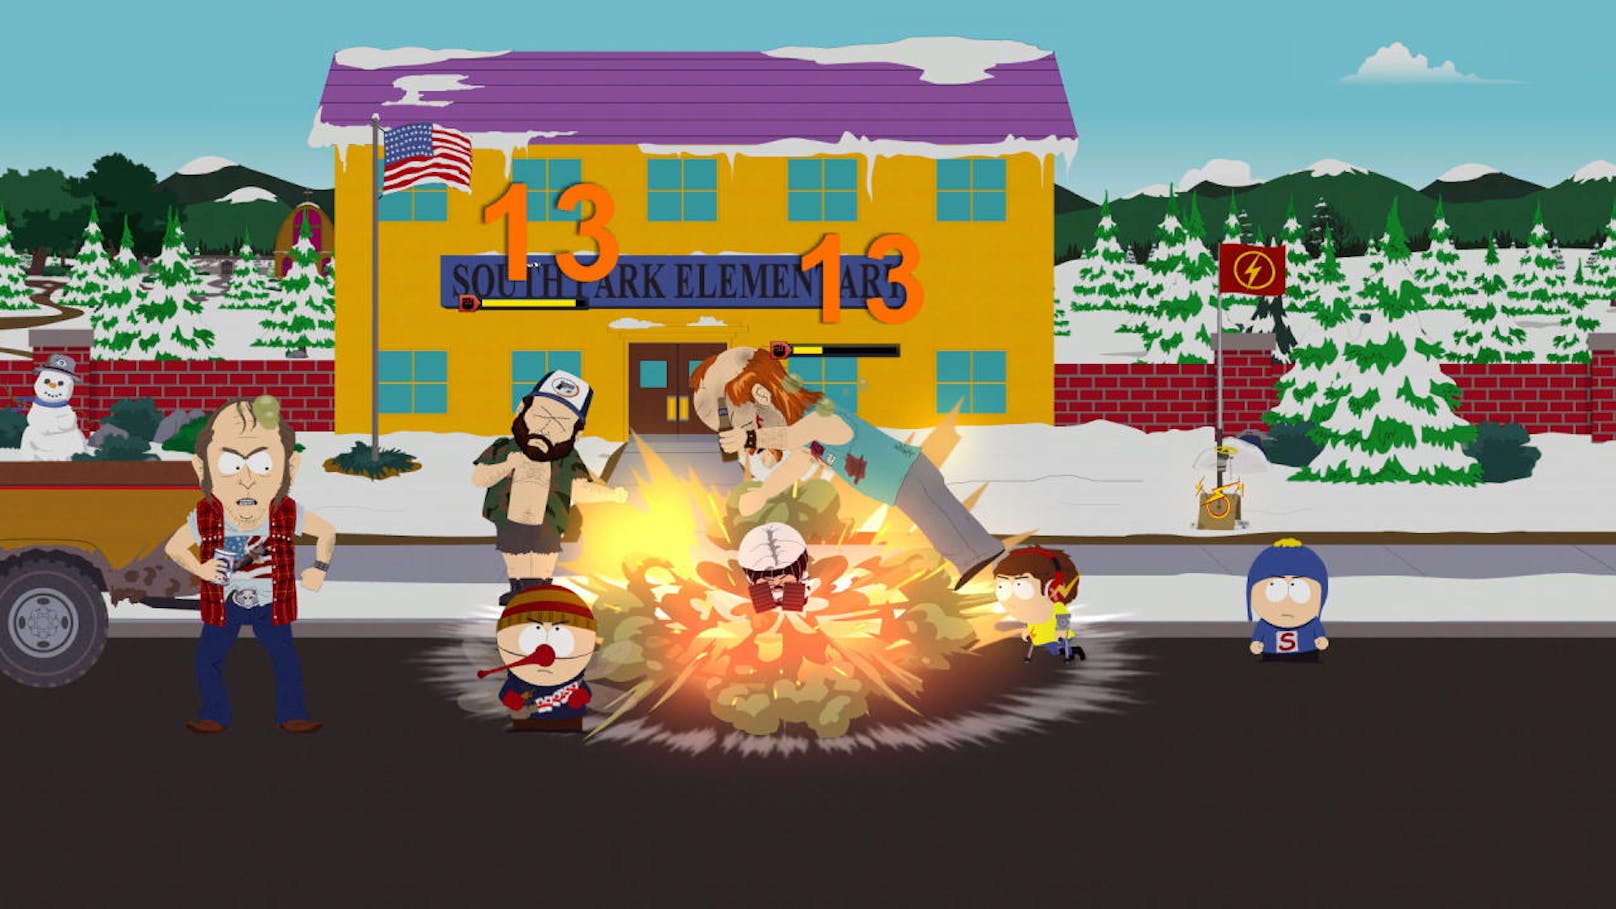 Die Spielfigur lässt sich relativ einfach und unkompliziert durch die Straßen von South Park oder durch die Häuser bewegen. Wann immer es Hindernisse zu überwinden gibt oder man in einen Kampf verwickelt wird, erhält man am Bildschirm Anweisungen, was genau zu ist.